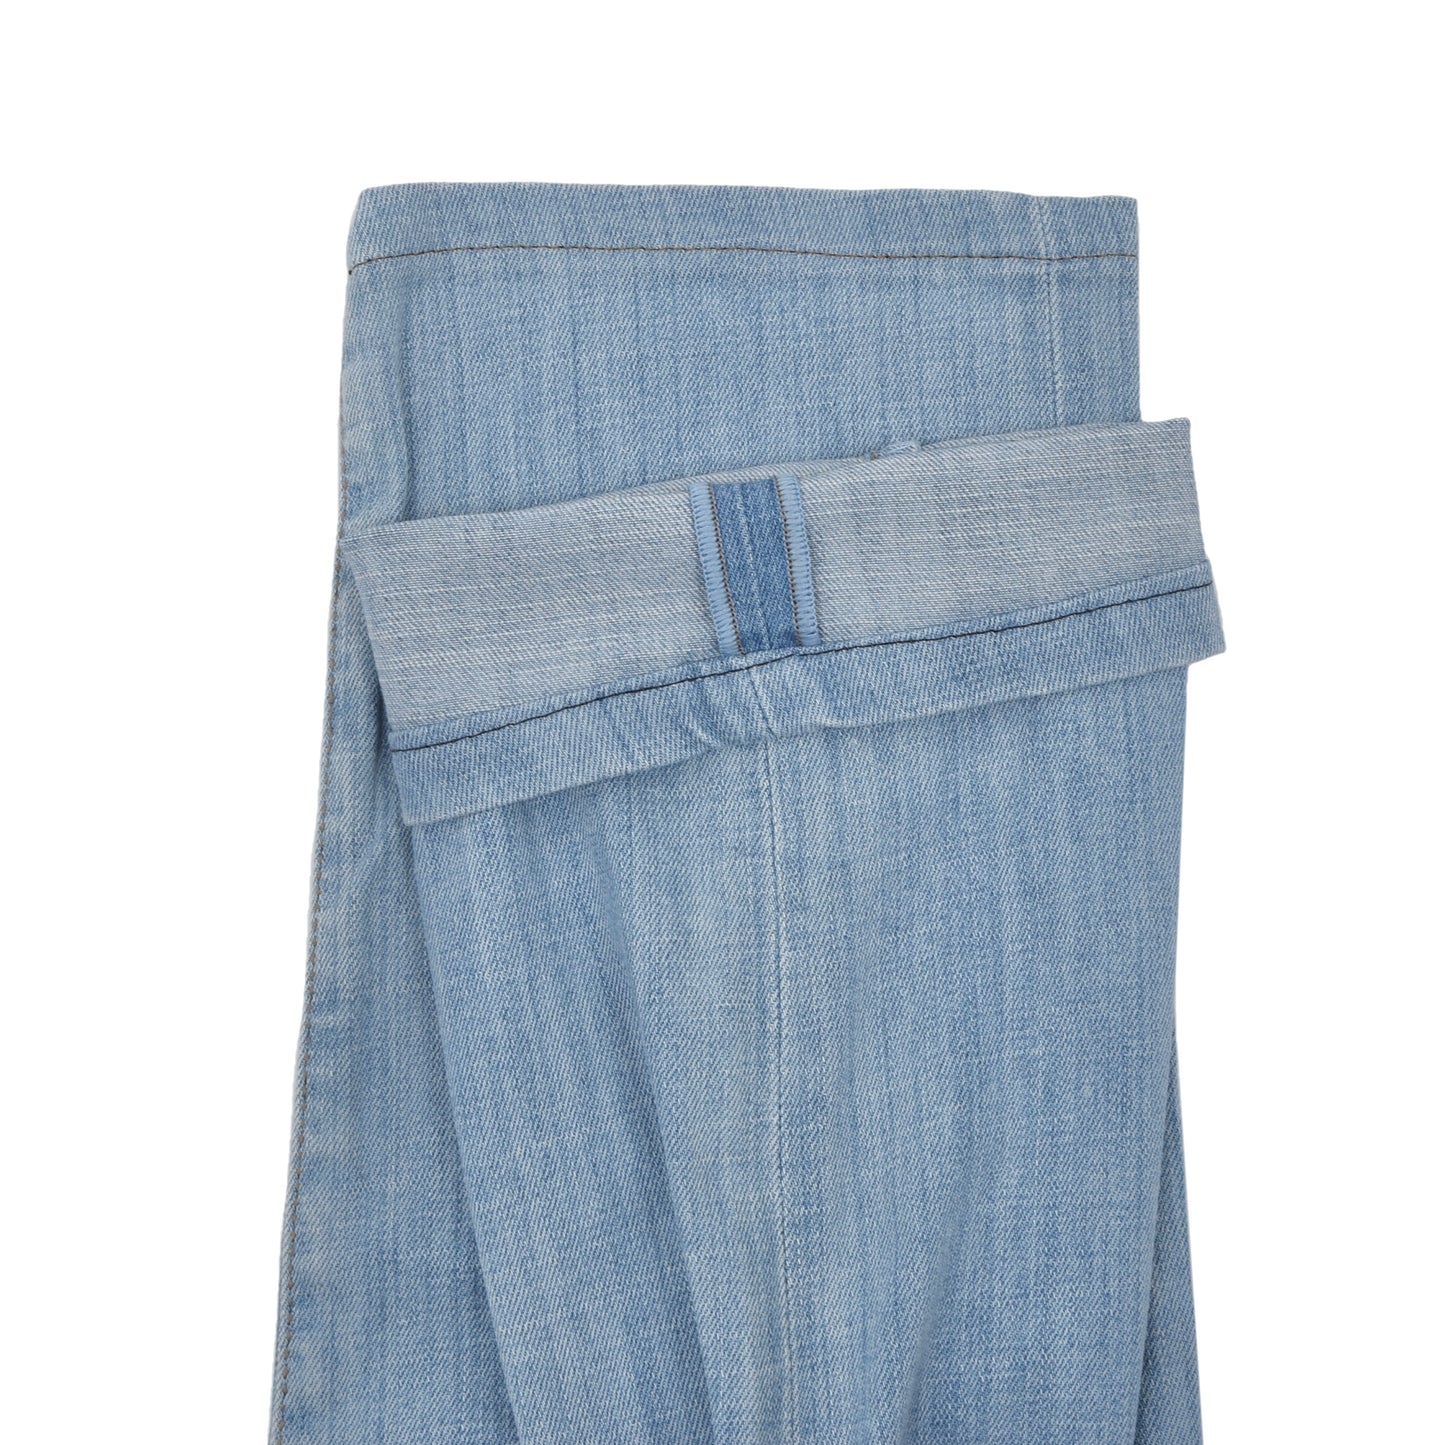 Jacob Cohën Jeans Size 34 Type J628 Comfort - Light Wash